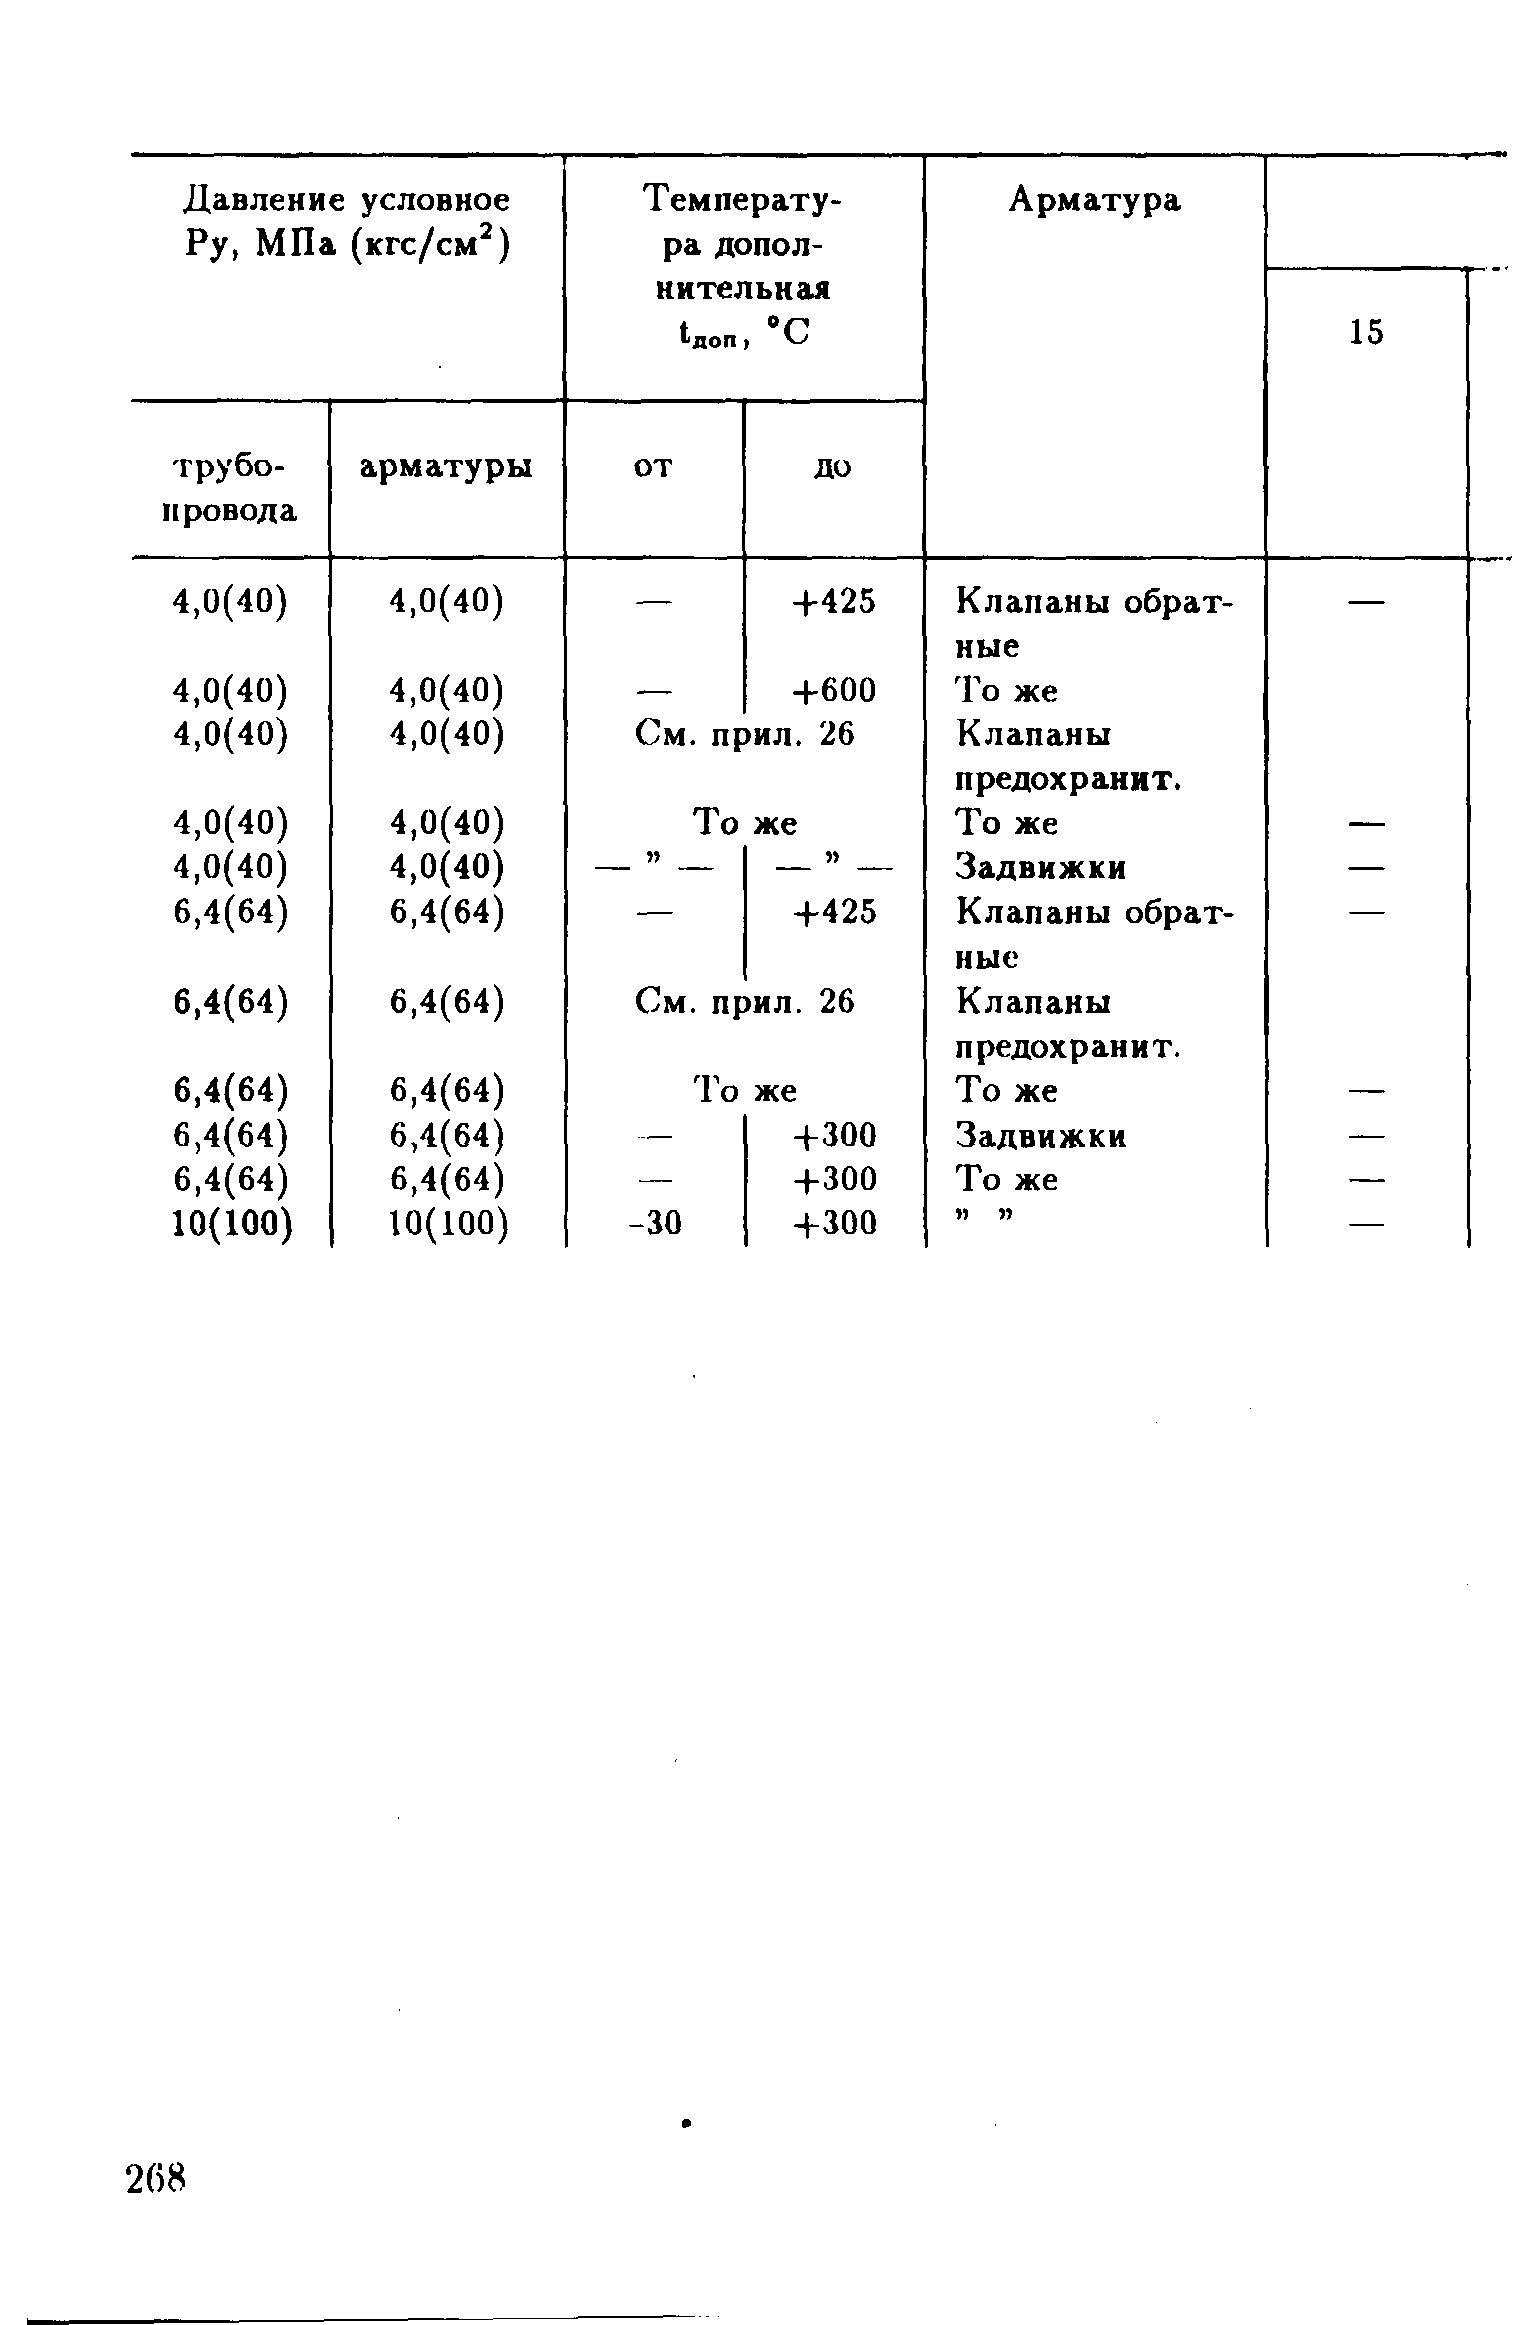 РД 39-132-94